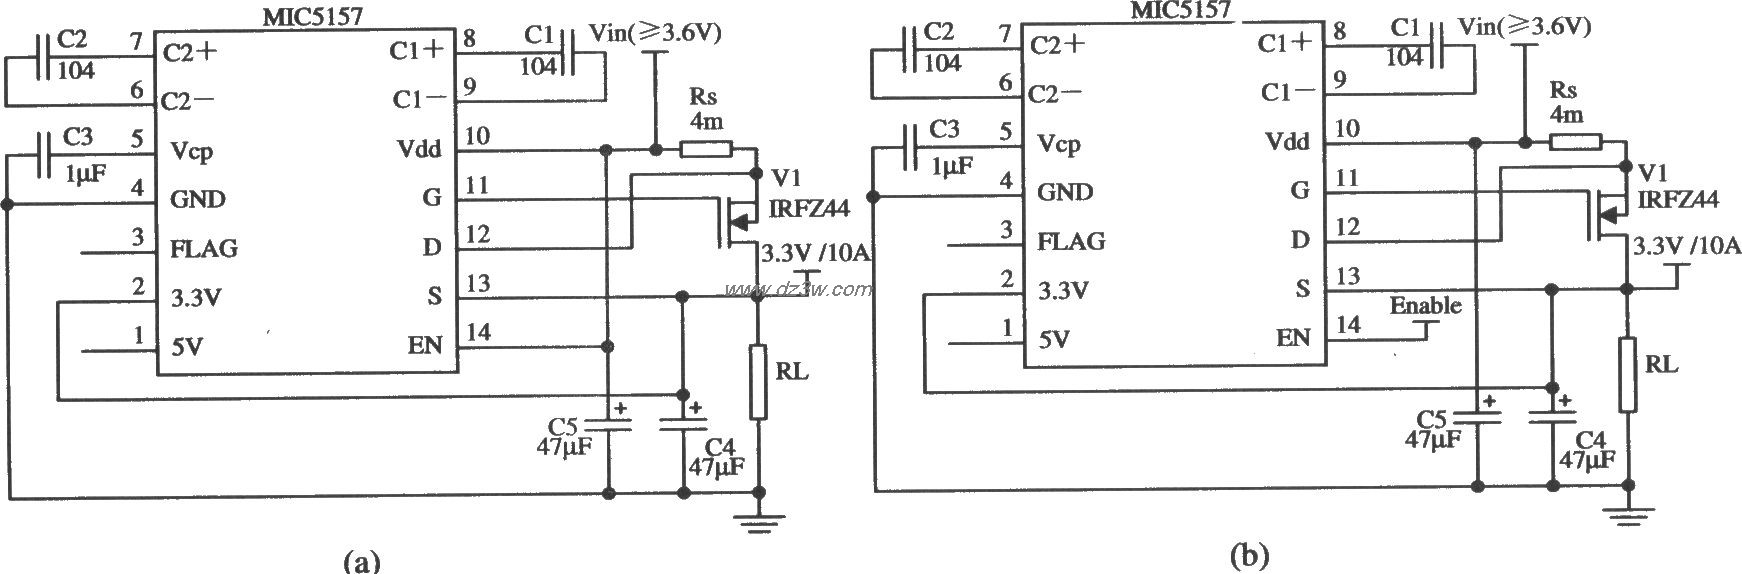 由MIC5157構成的輸出3.3 V／lOA的線性穩壓器電路